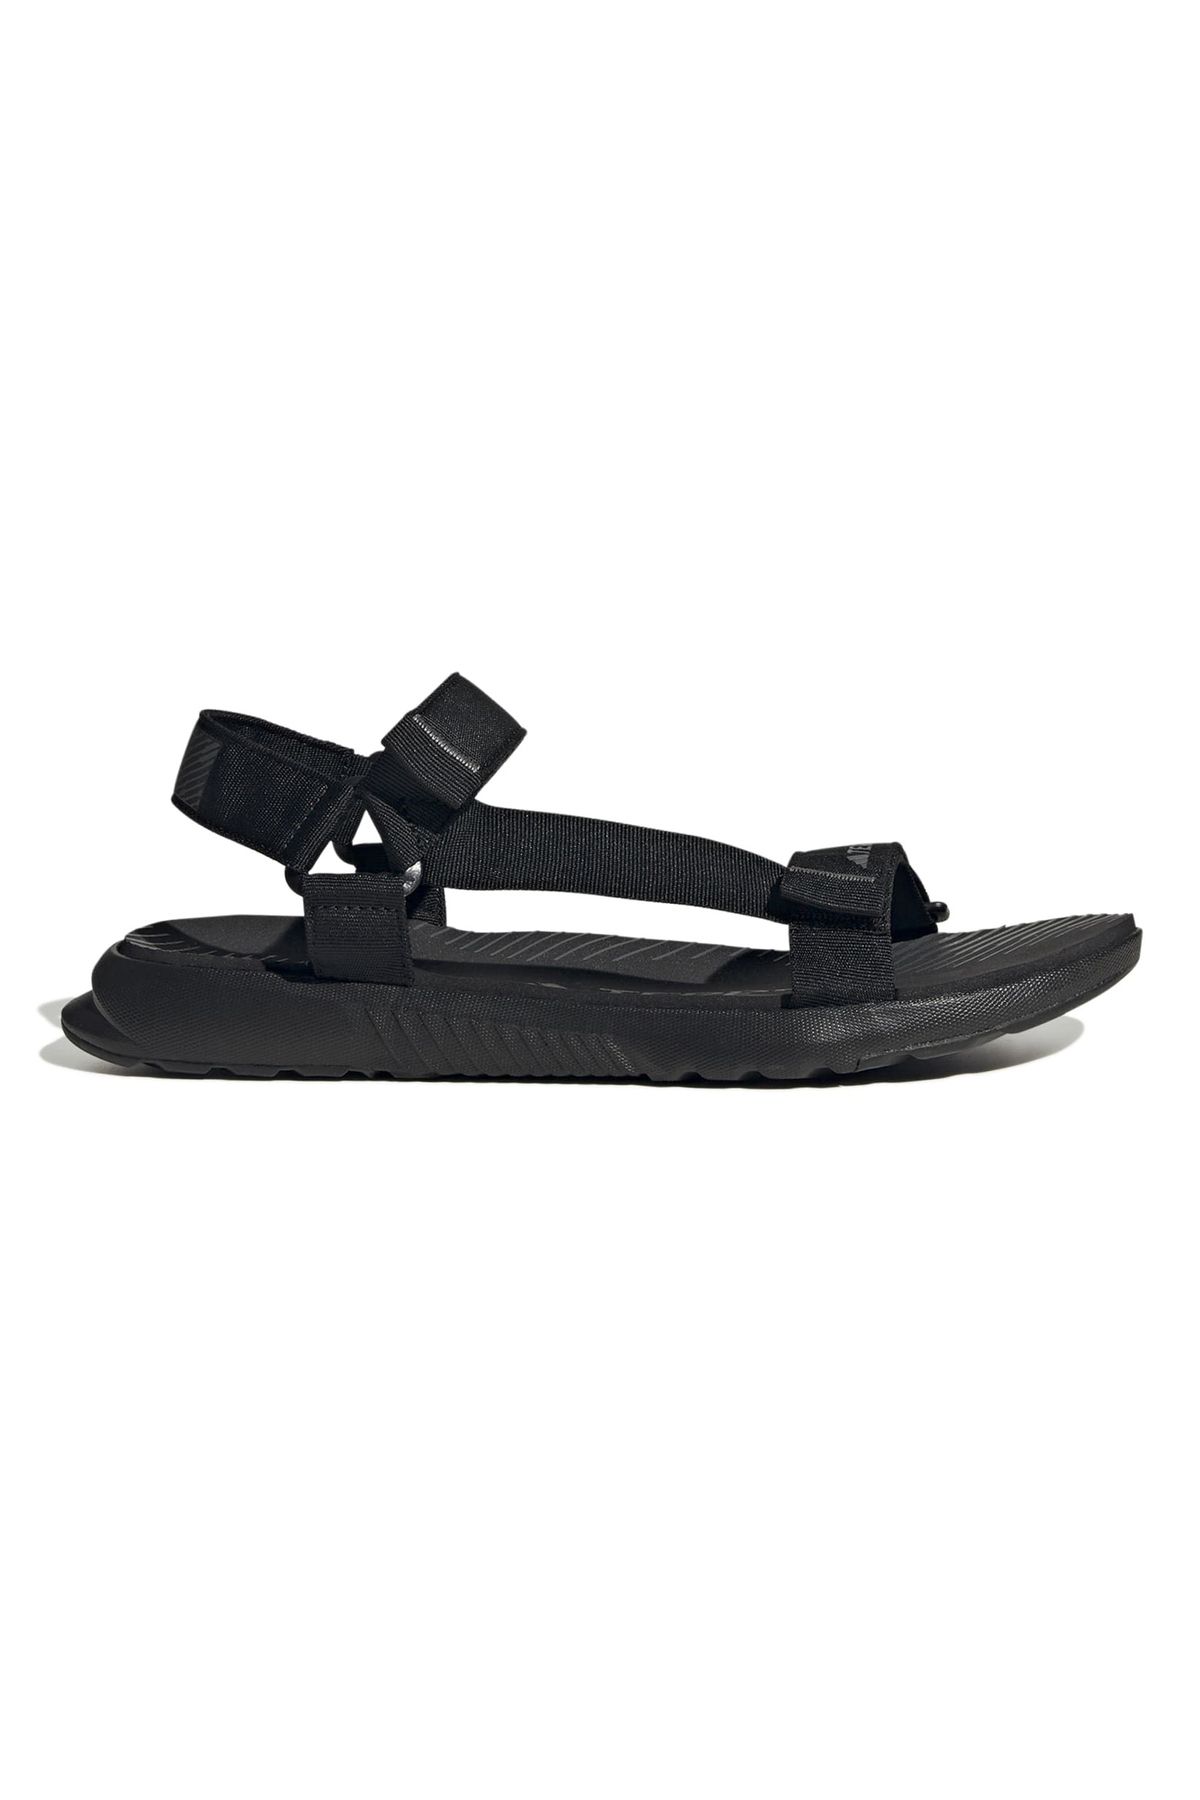 adidas ID4273-K adidas Terrex Hydroterra L Cc Kadın Sandalet Siyah